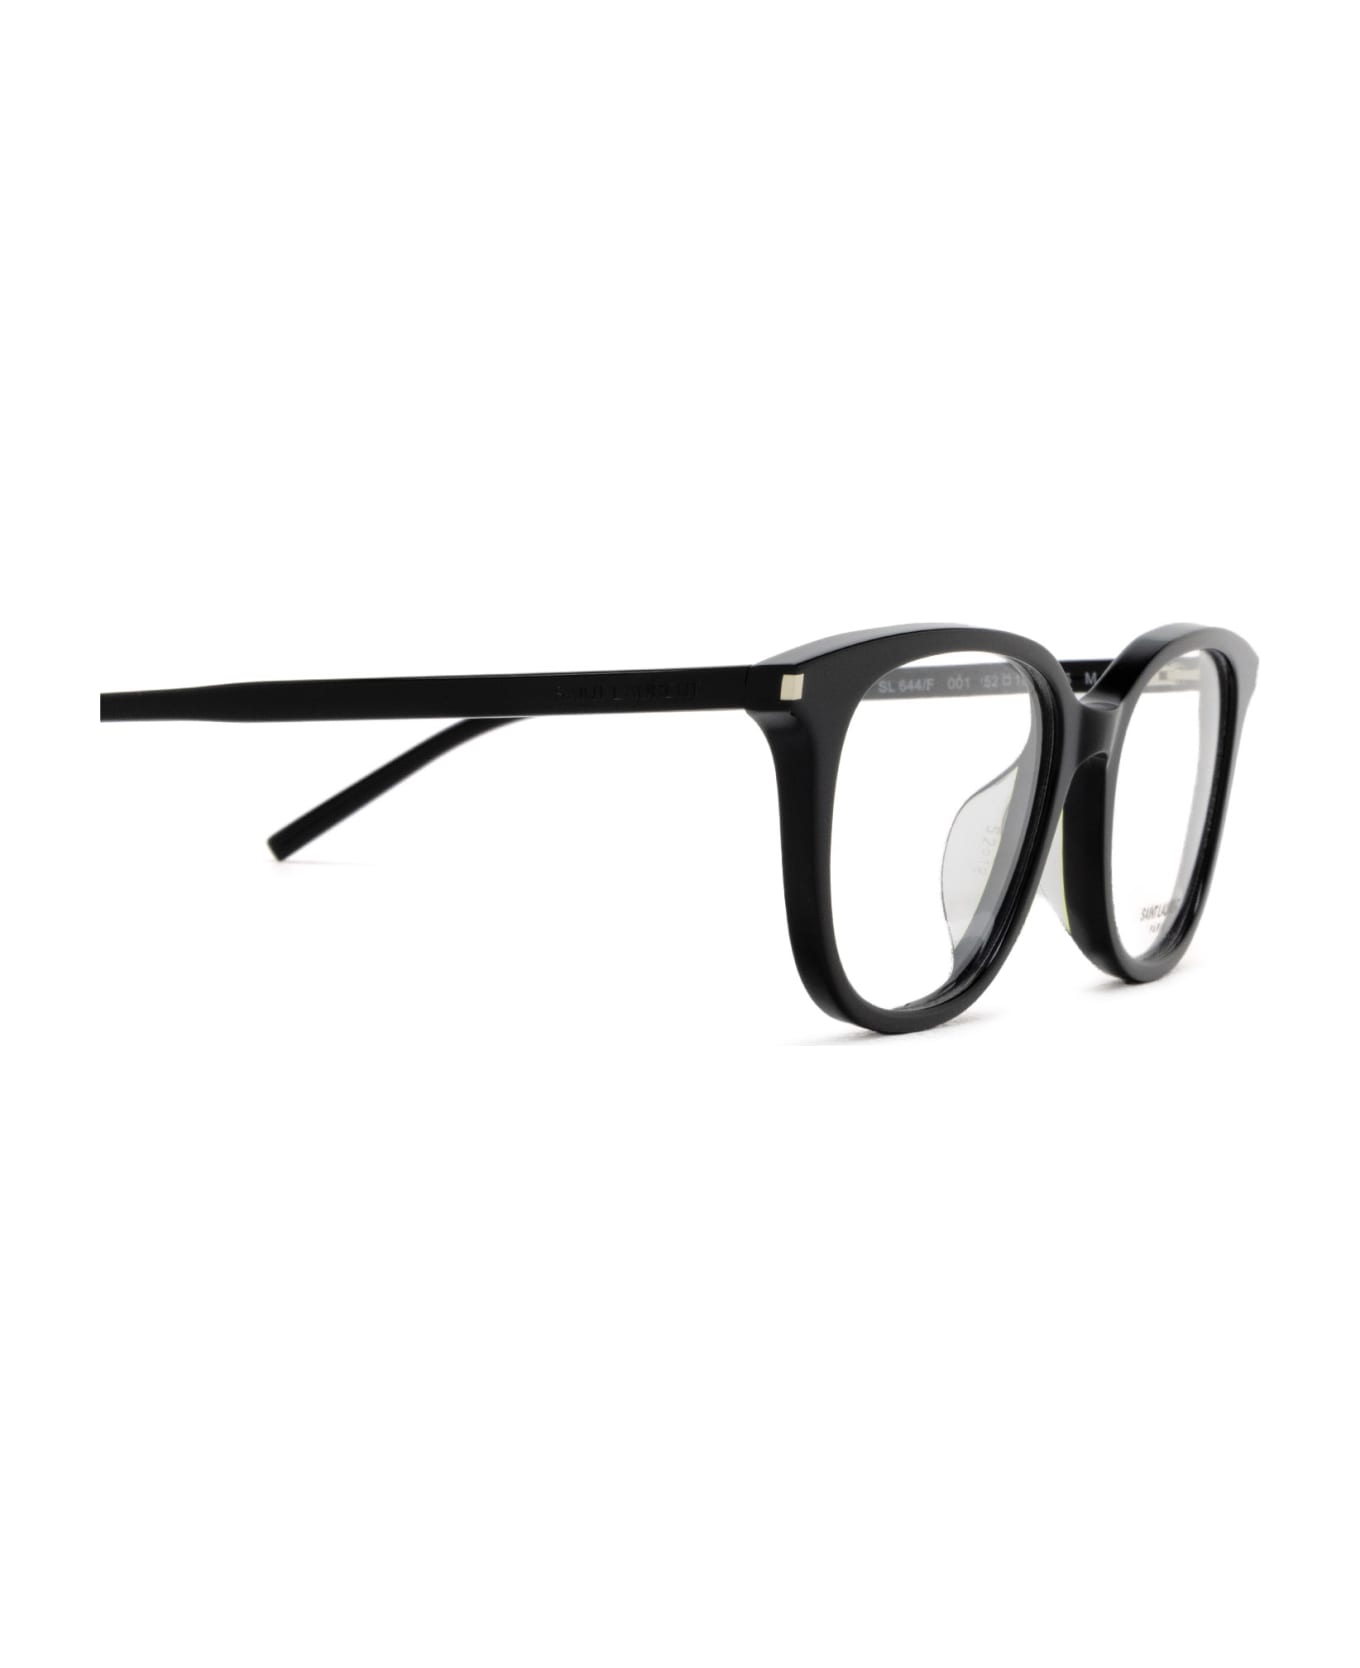 Saint Laurent Eyewear Sl 644/f Black Glasses - Black